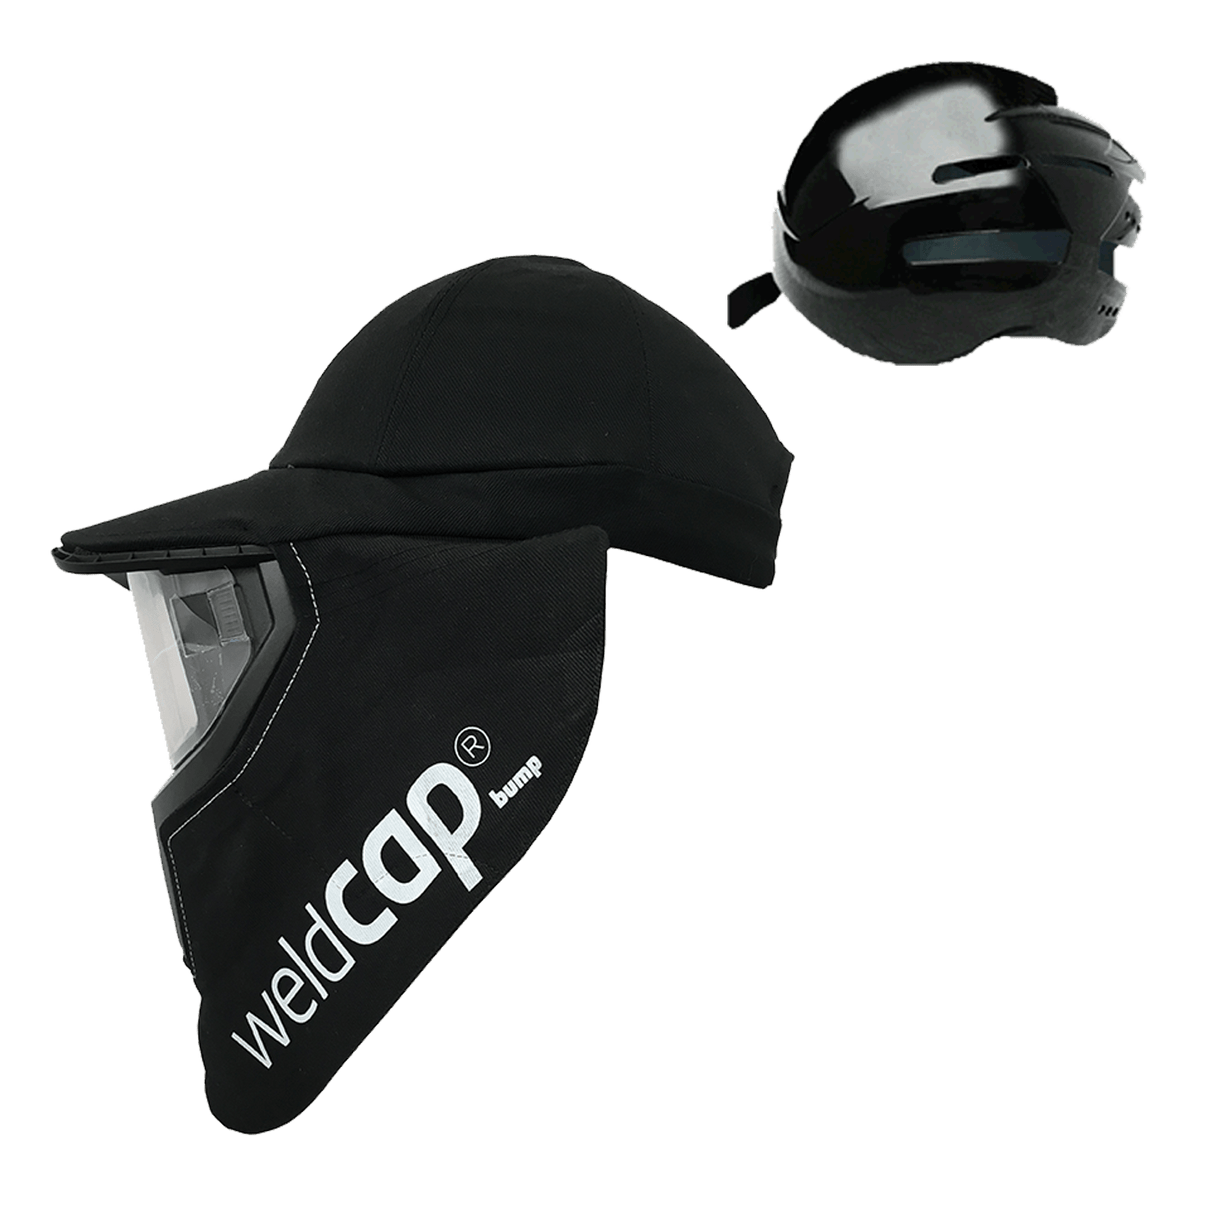 Optrel Weldcap Welding Helmet - Baseball Cap - Bump Cap Or Hard Hat Options!